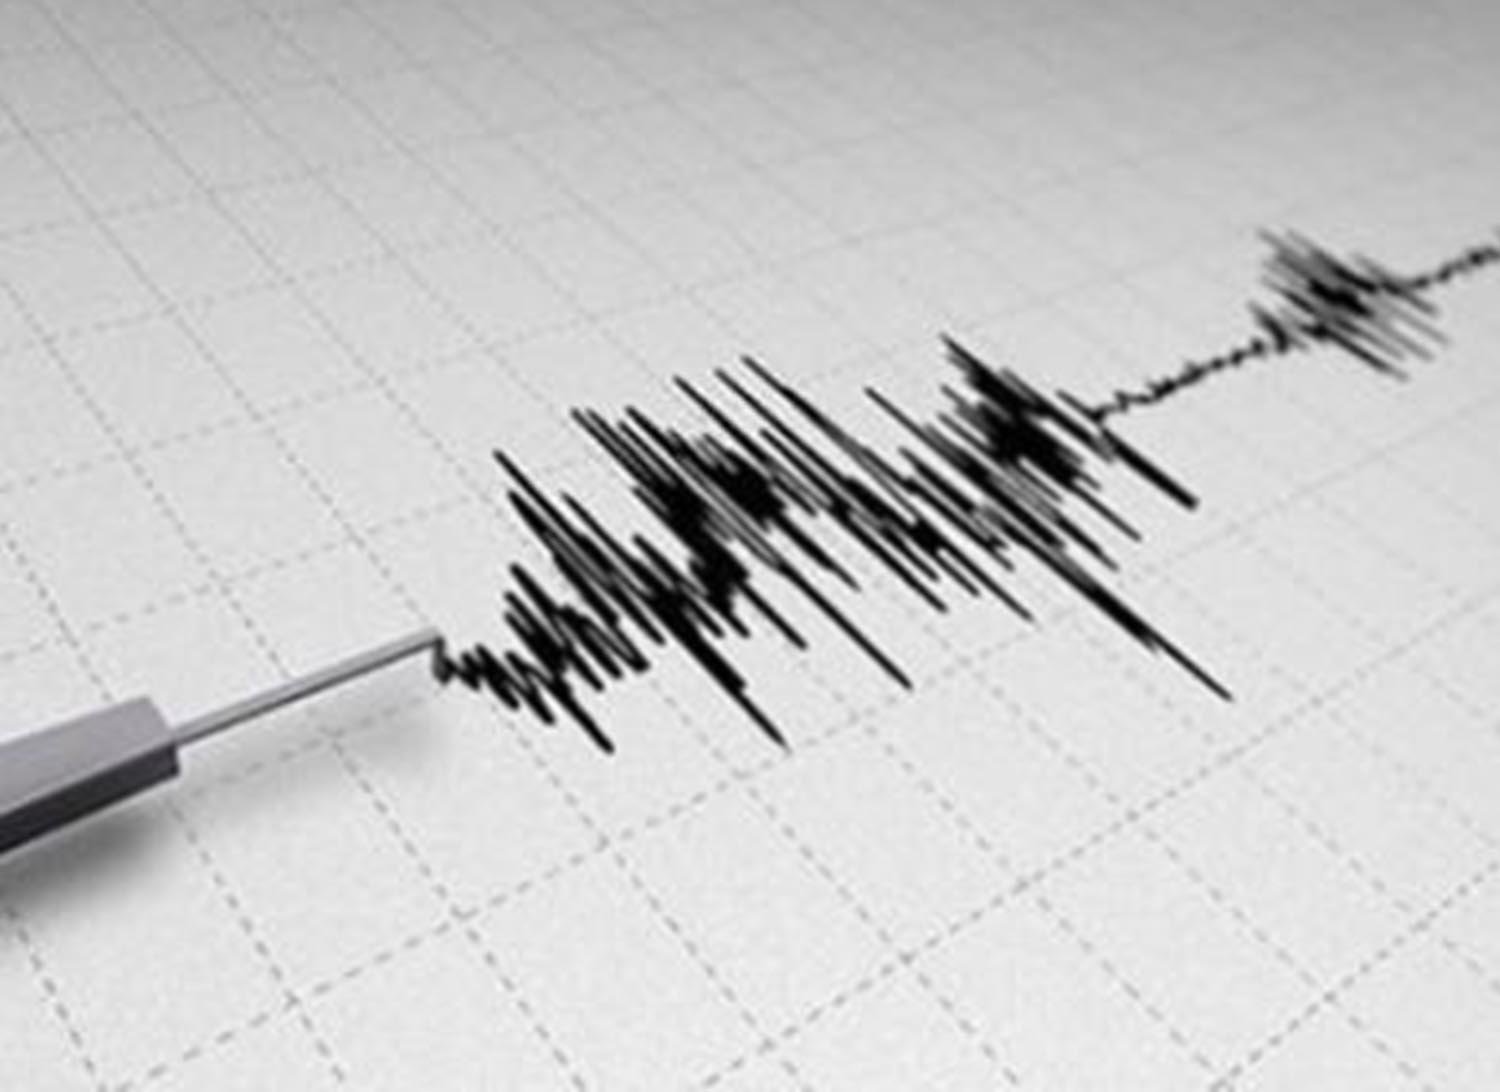 Ιταλία: Μικρές υλικές ζημιές στην Τοσκάνη από τον σεισμός των 4,5 Ρίχτερ